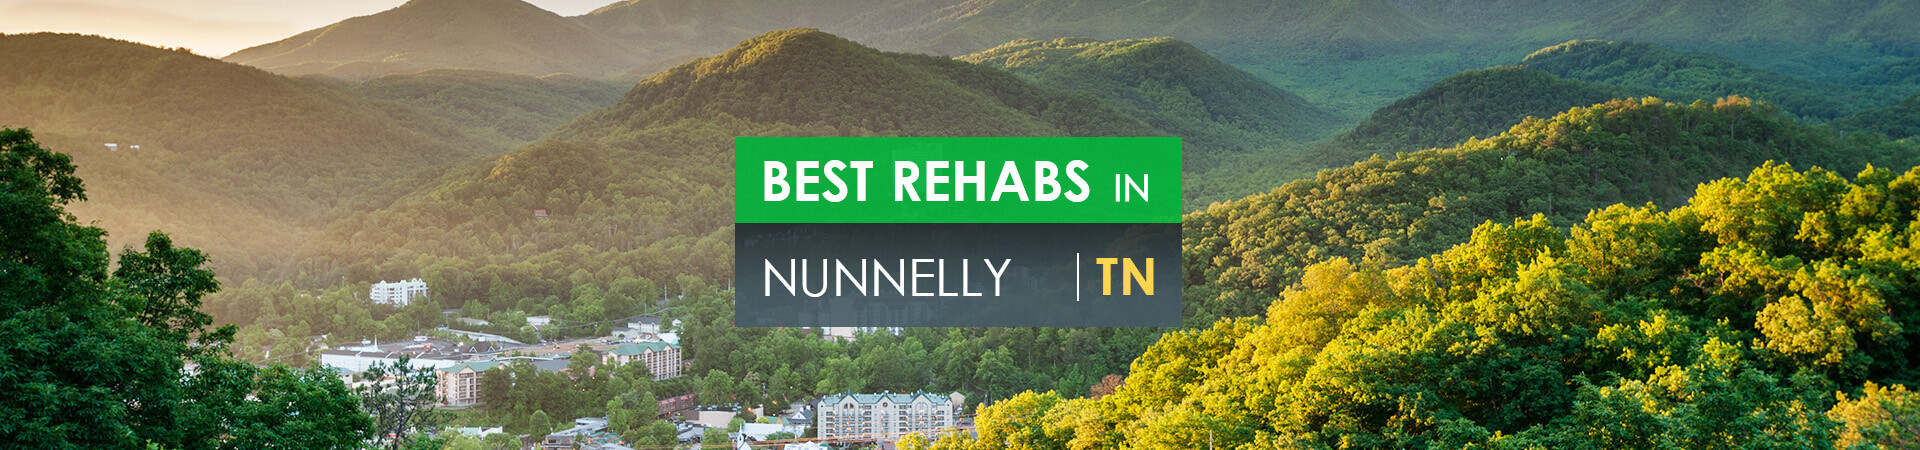 Best rehabs in Nunnelly, TN